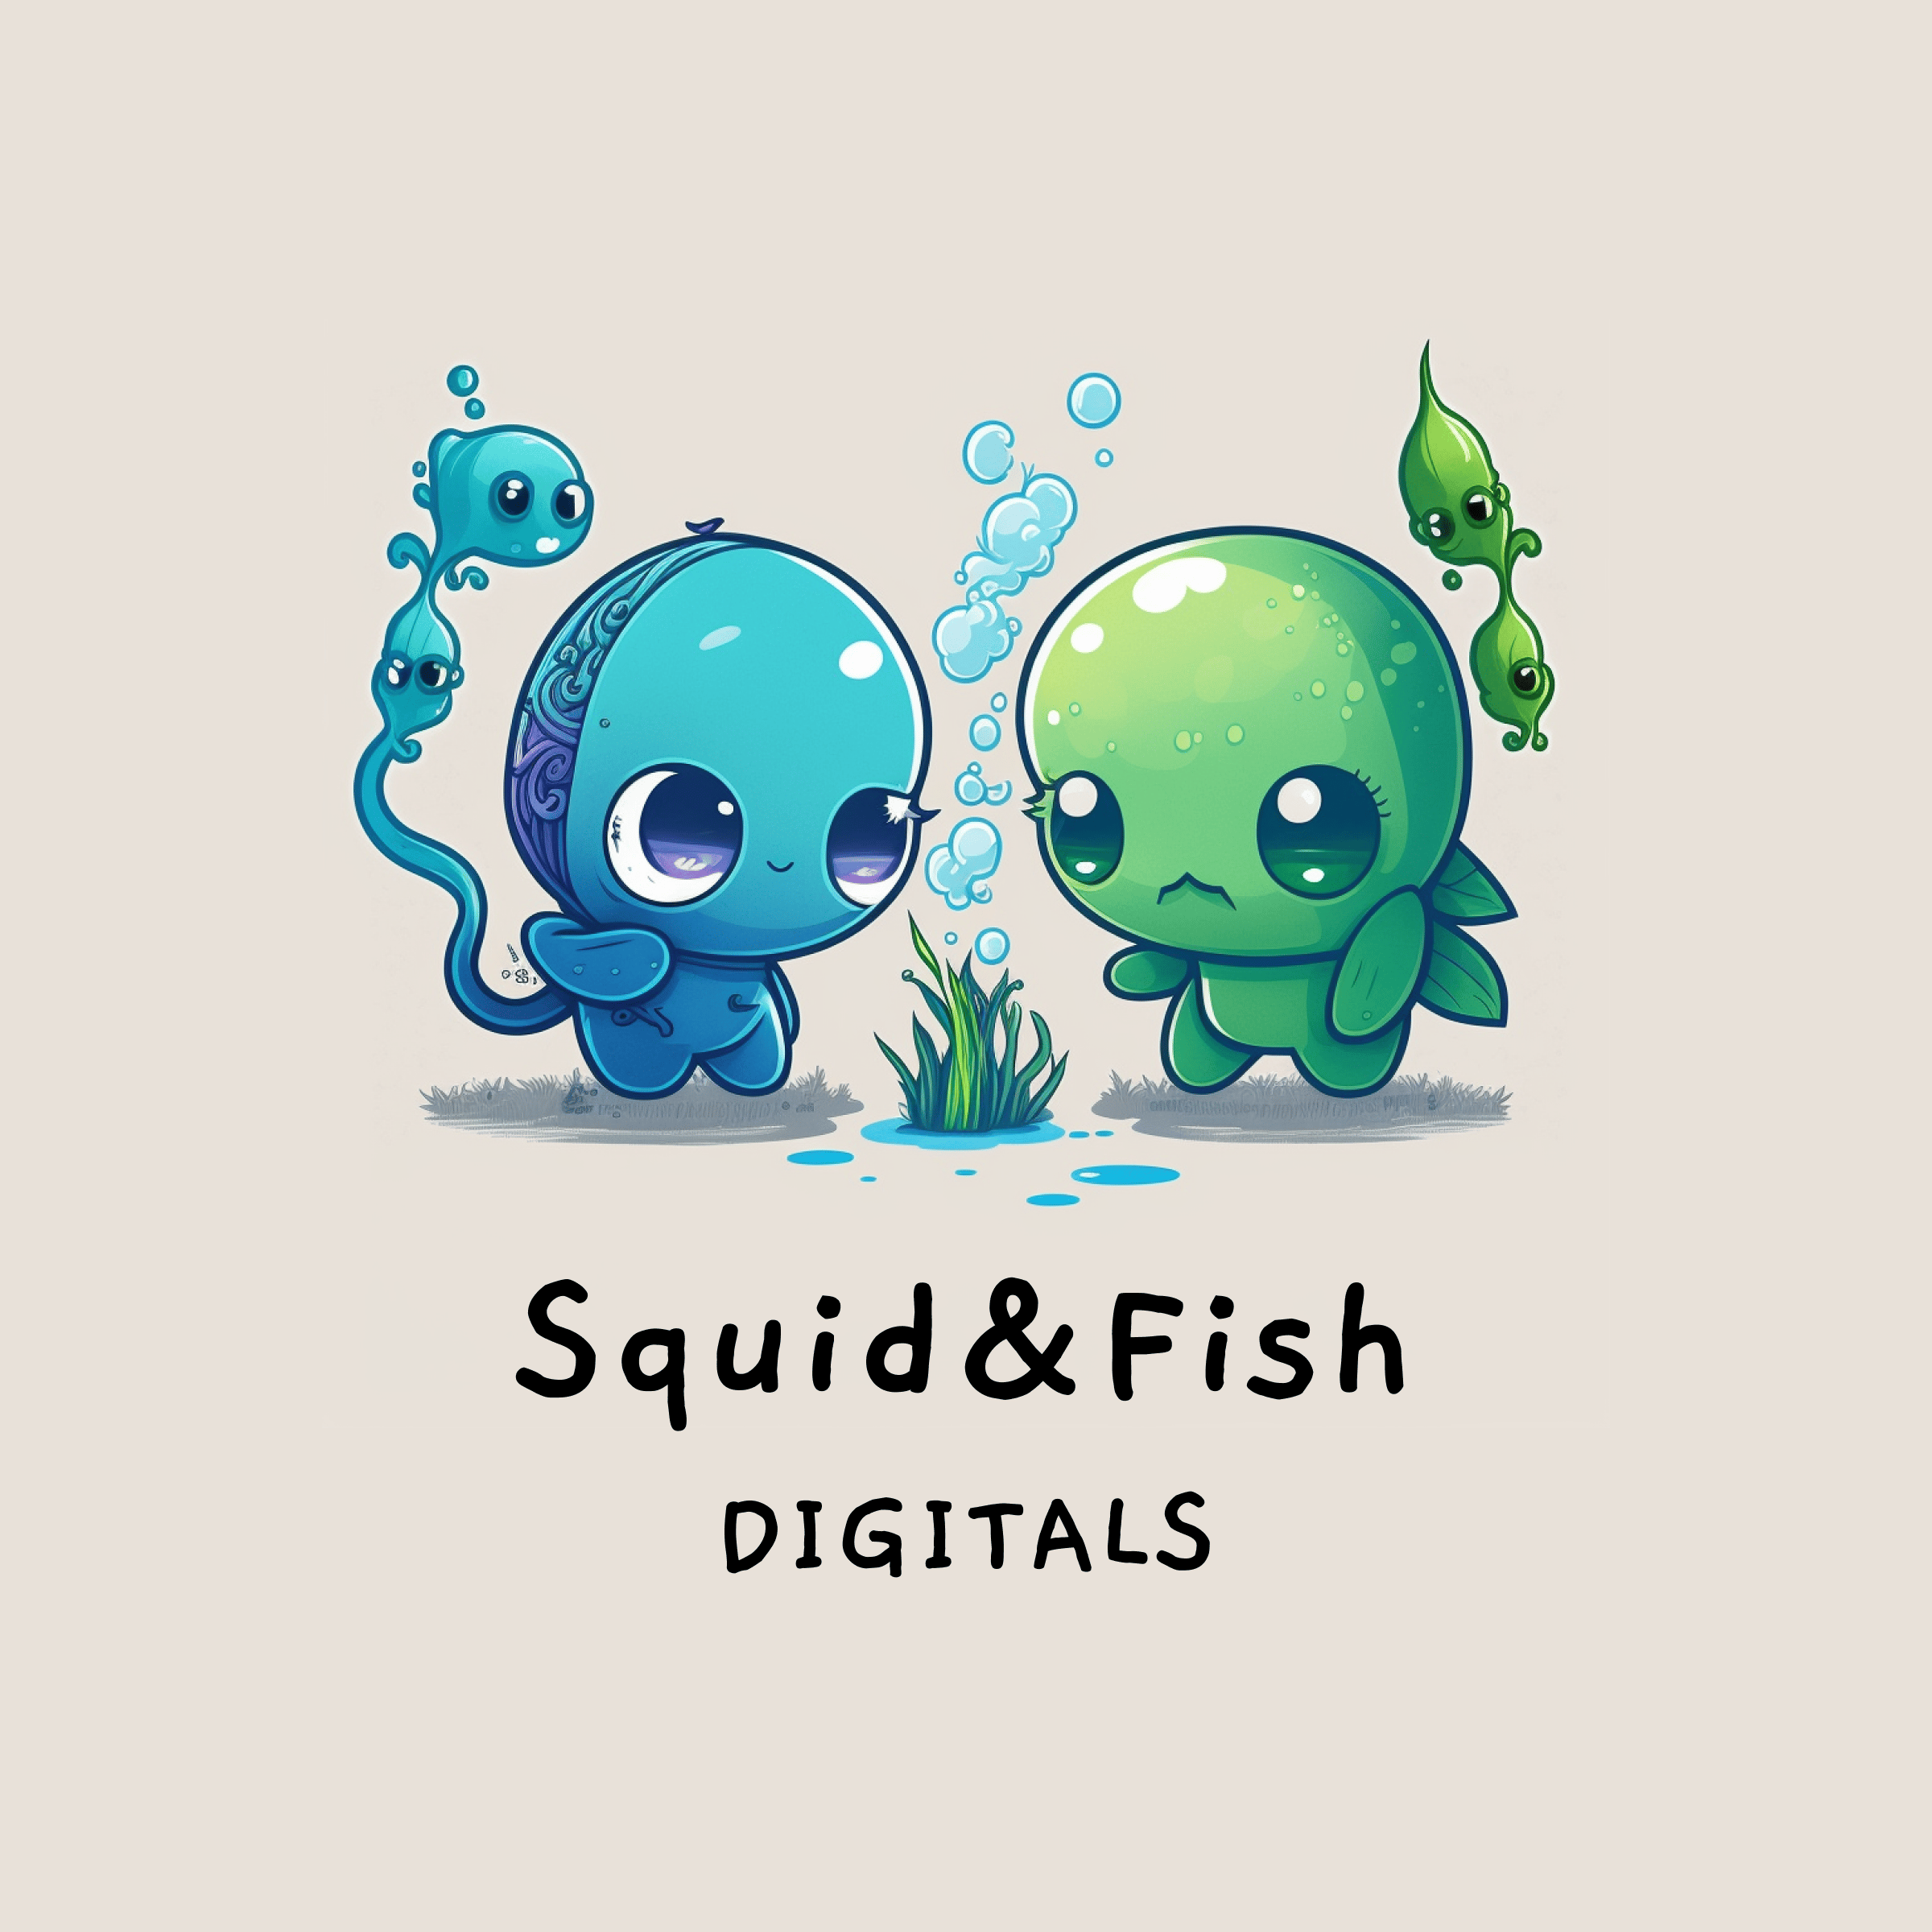 Squid & Fishのプロフィール画像